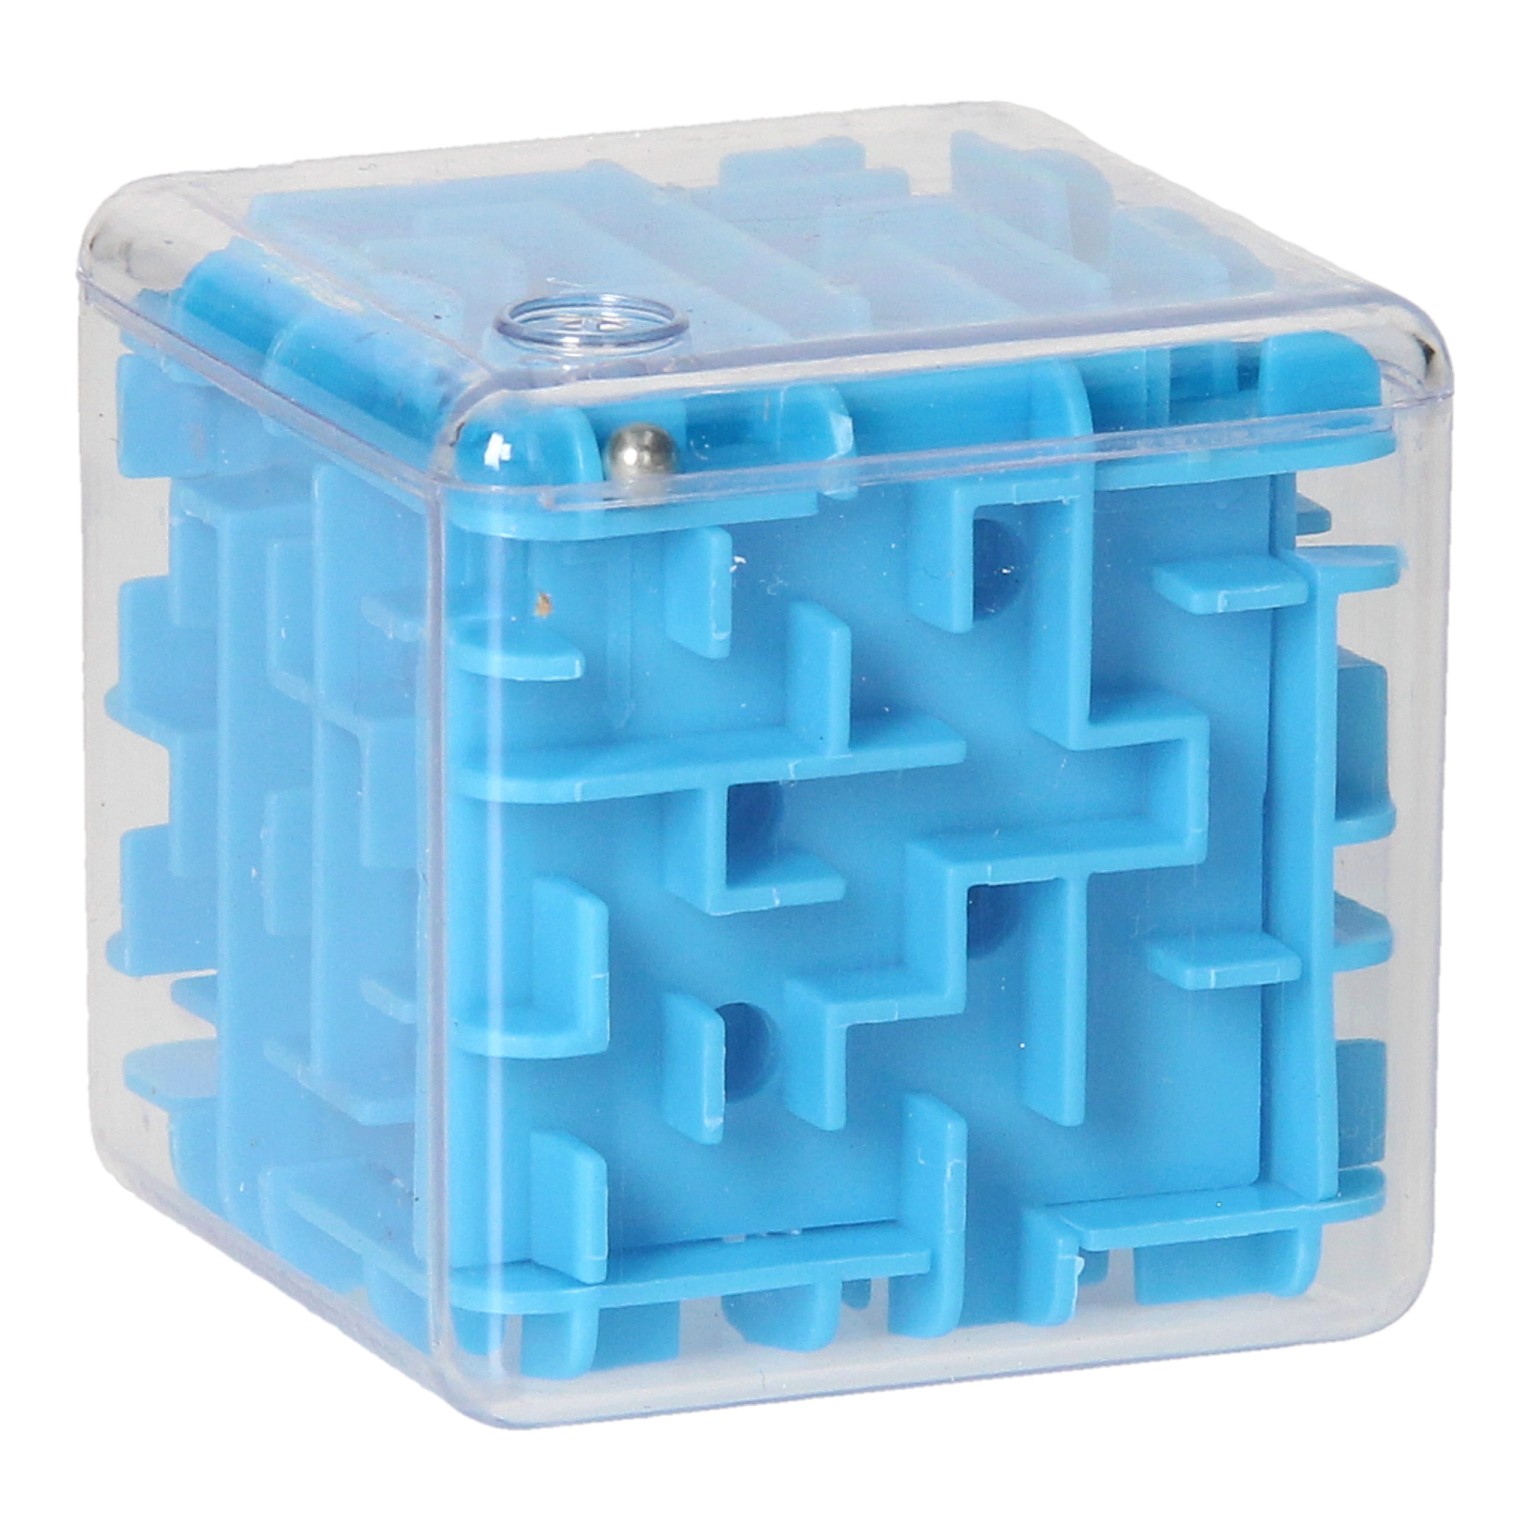 Geduldsspiel Maze in Cube